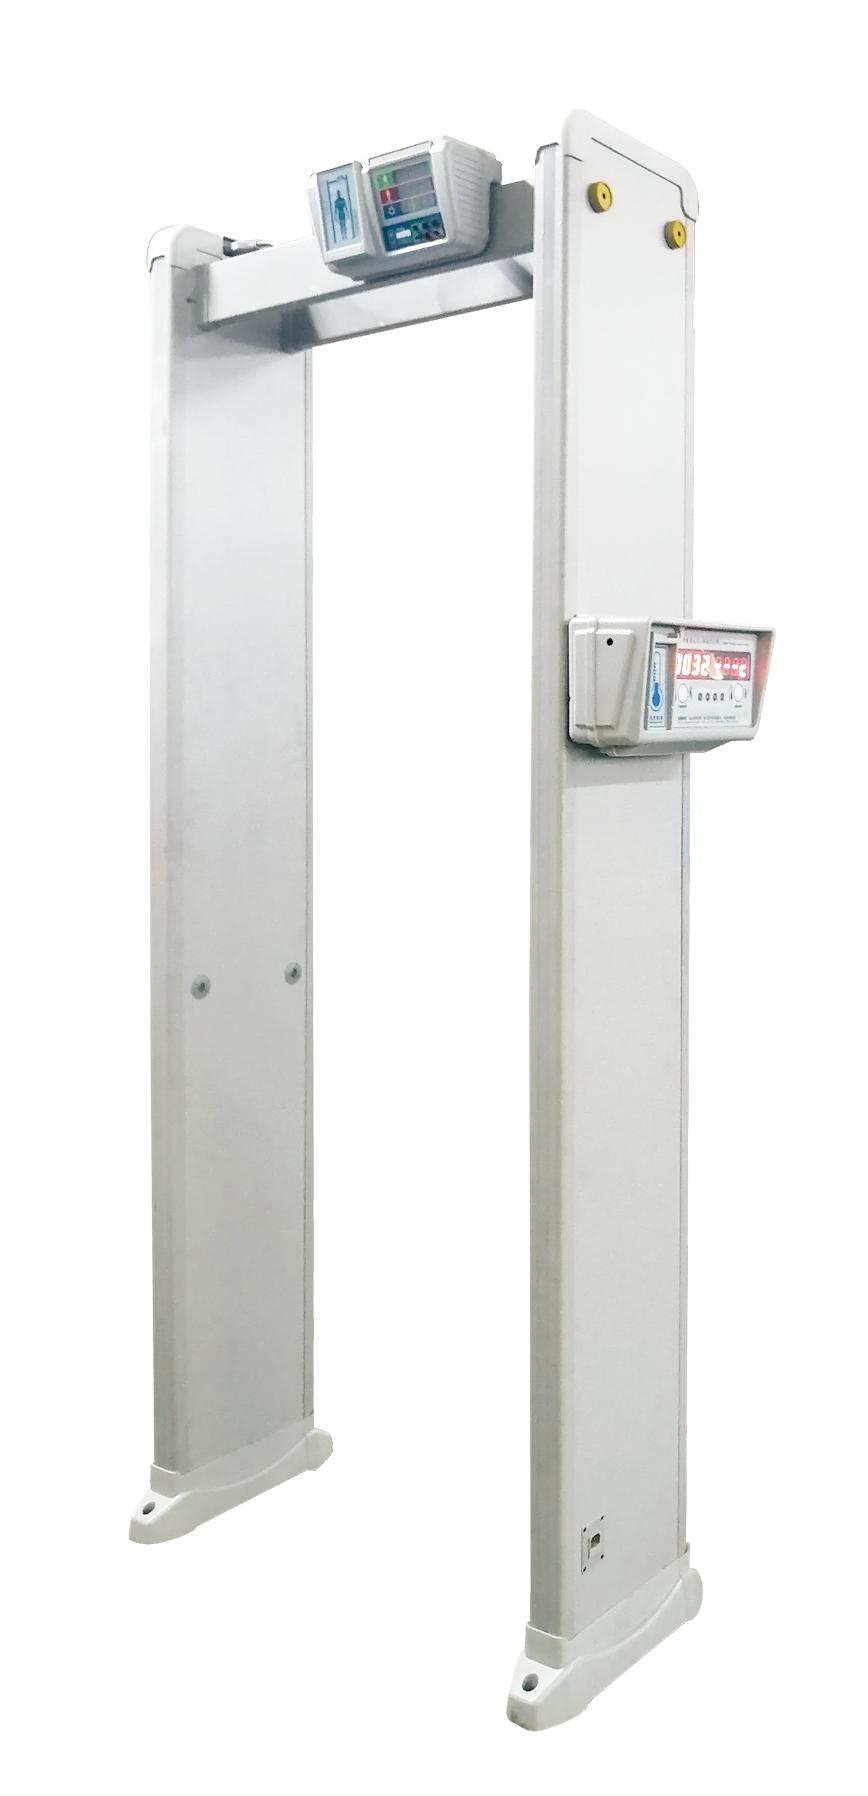 EI-MD3000 Detección de metales y Detección de Temperatura del cuerpo humano Puerta de seguridad